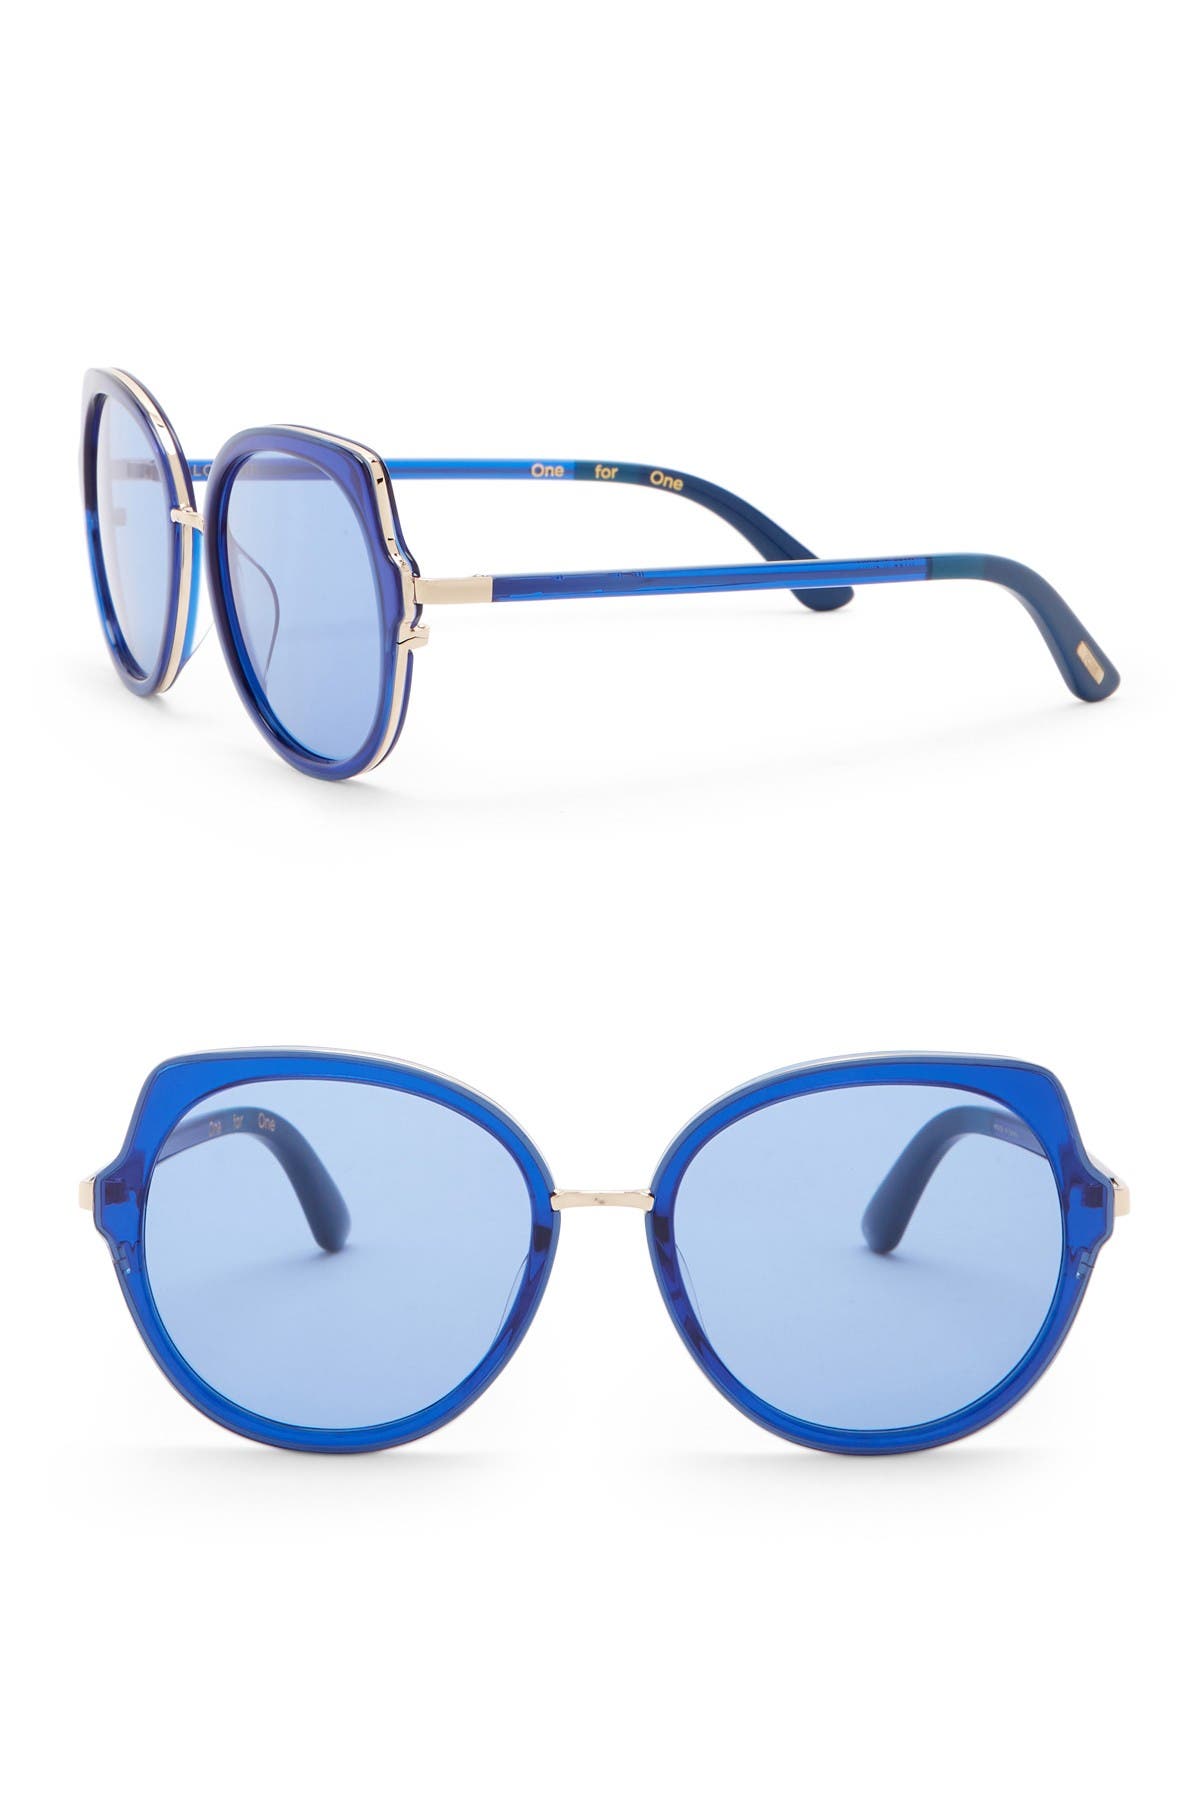 Toms Lottie 55mm Royal Sunglasses In Medium Blue